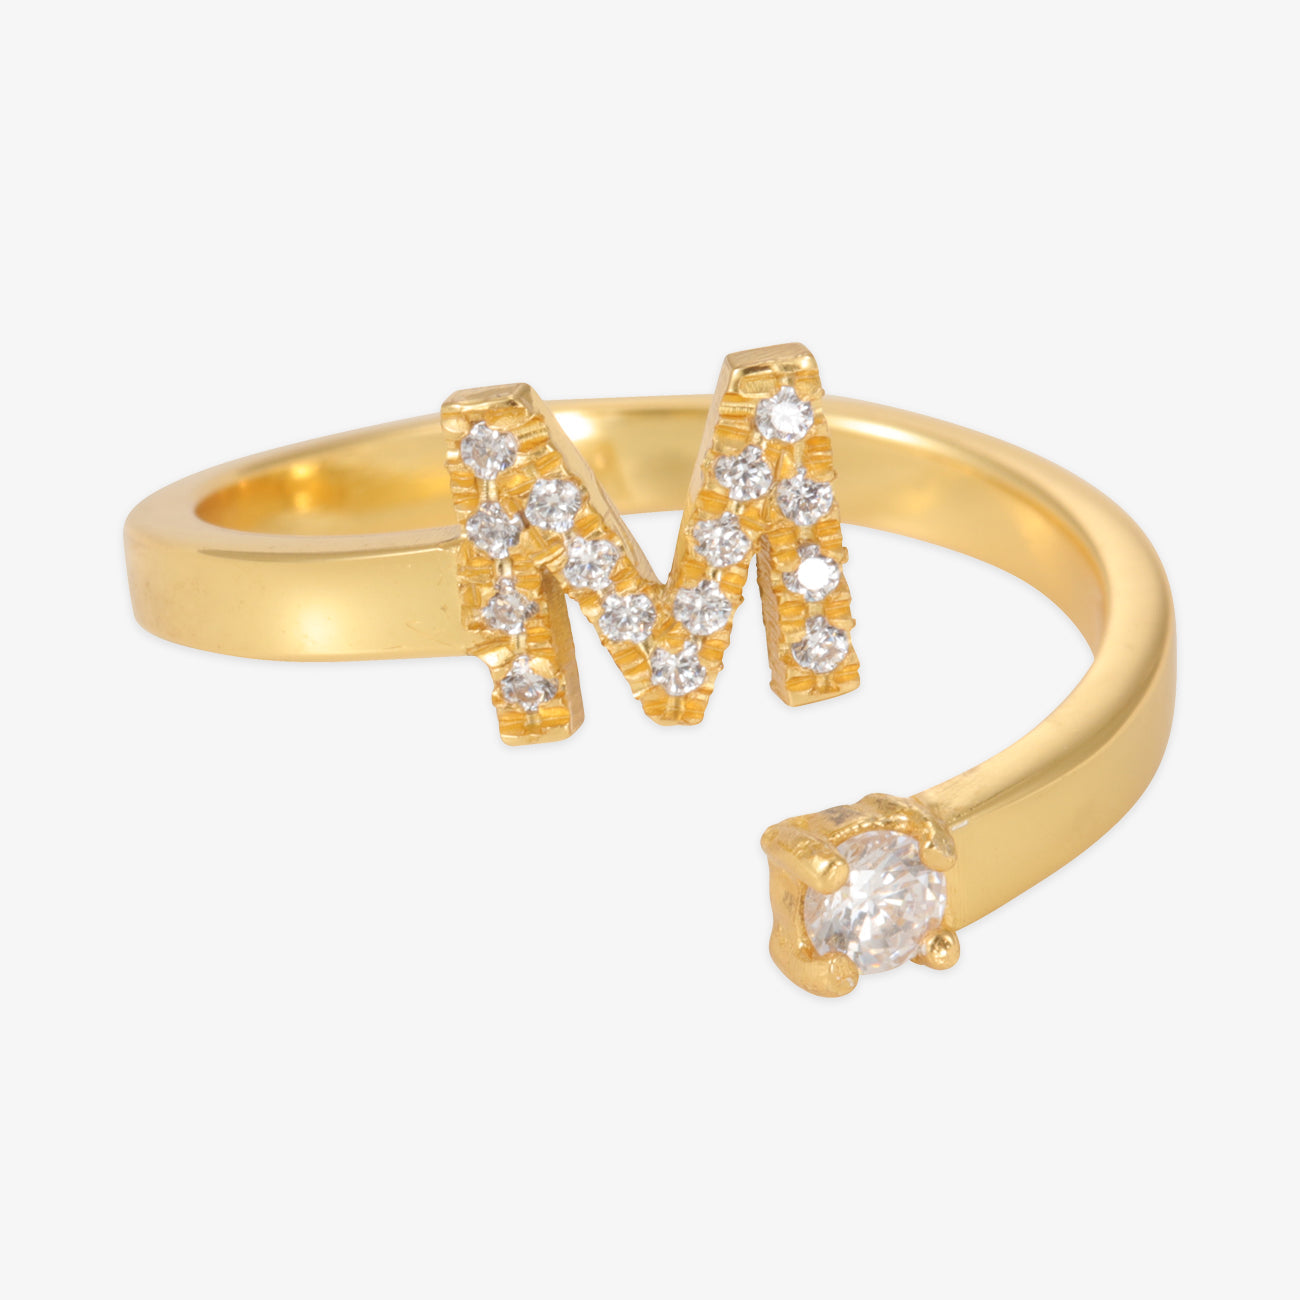 Ohromujúce personalizované prstene - symbol vás